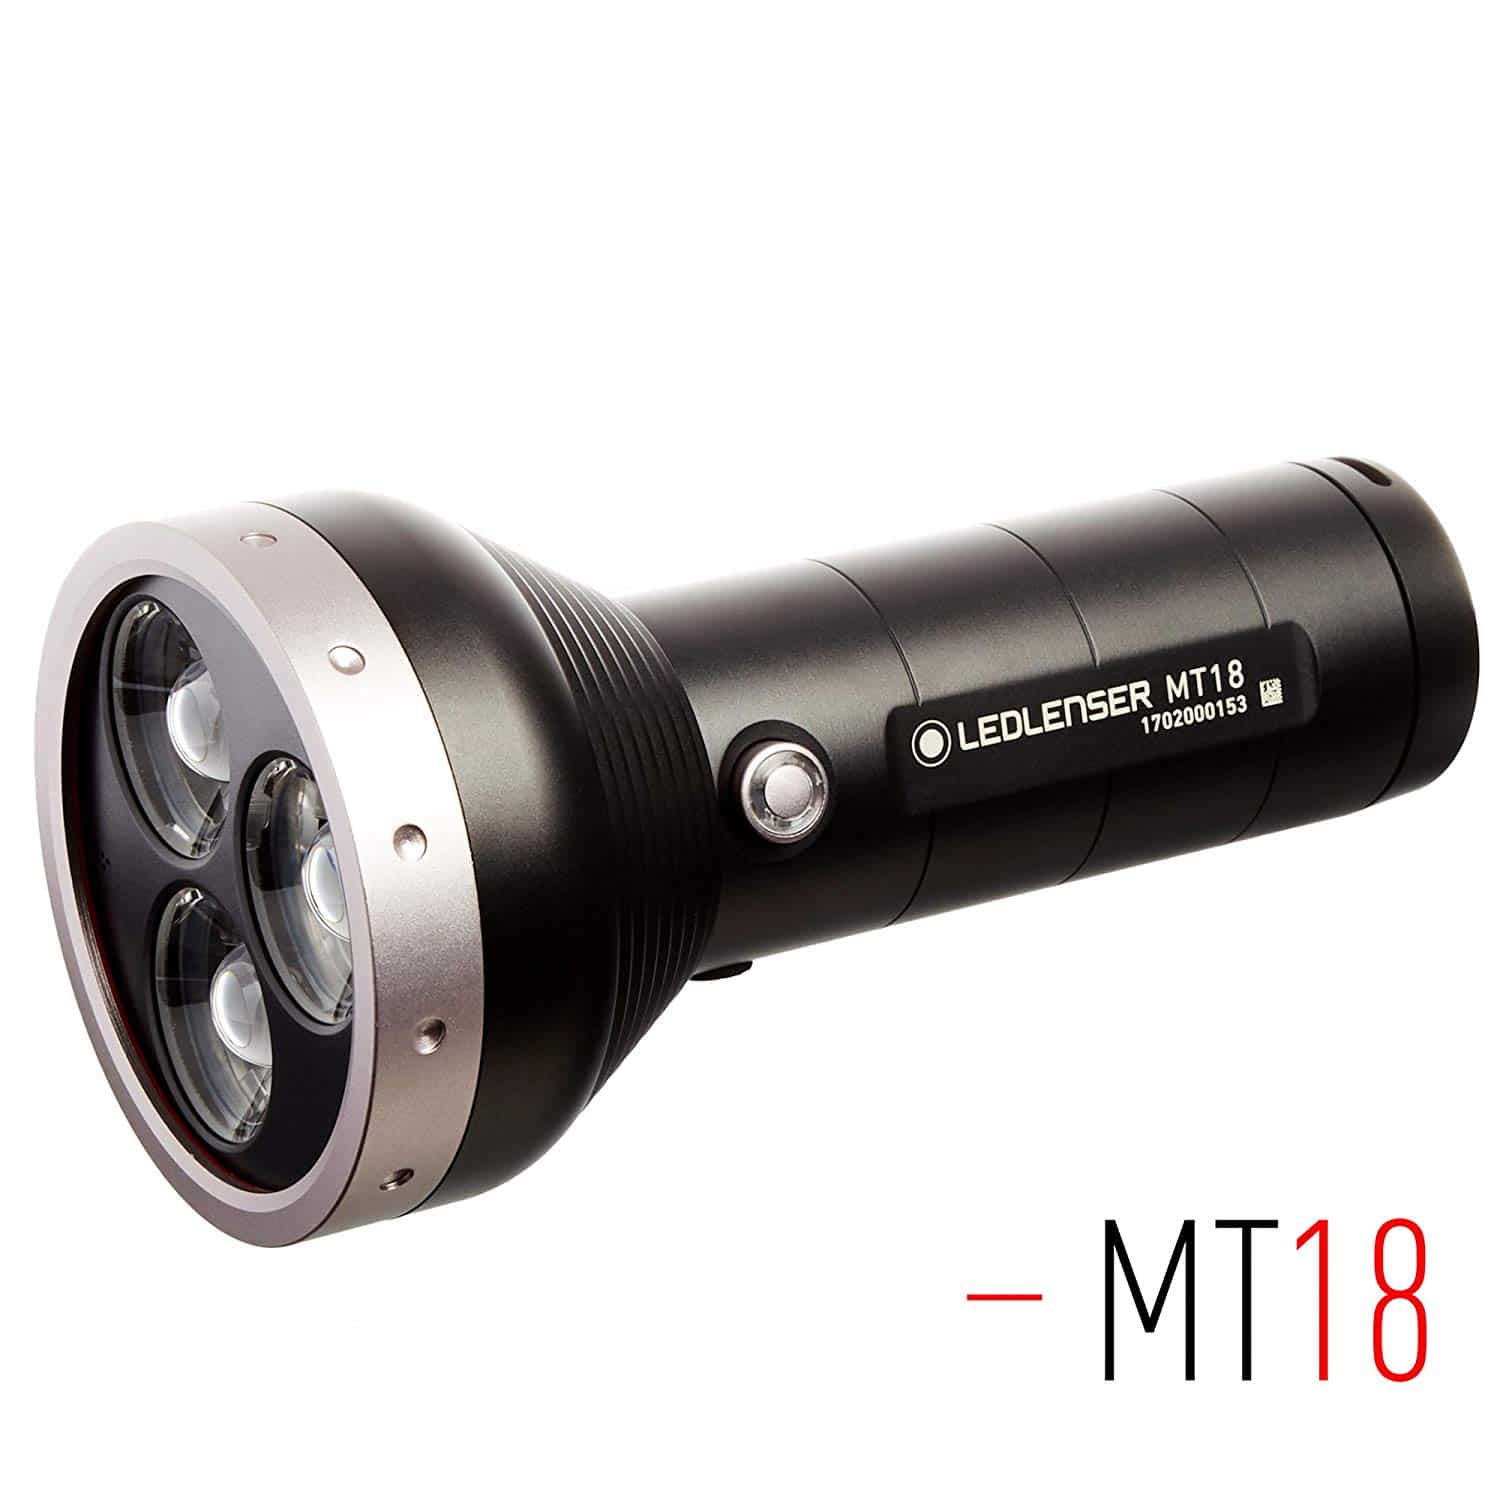  Ledlenser - MT18 Rechargeable Handheld Flashlight 